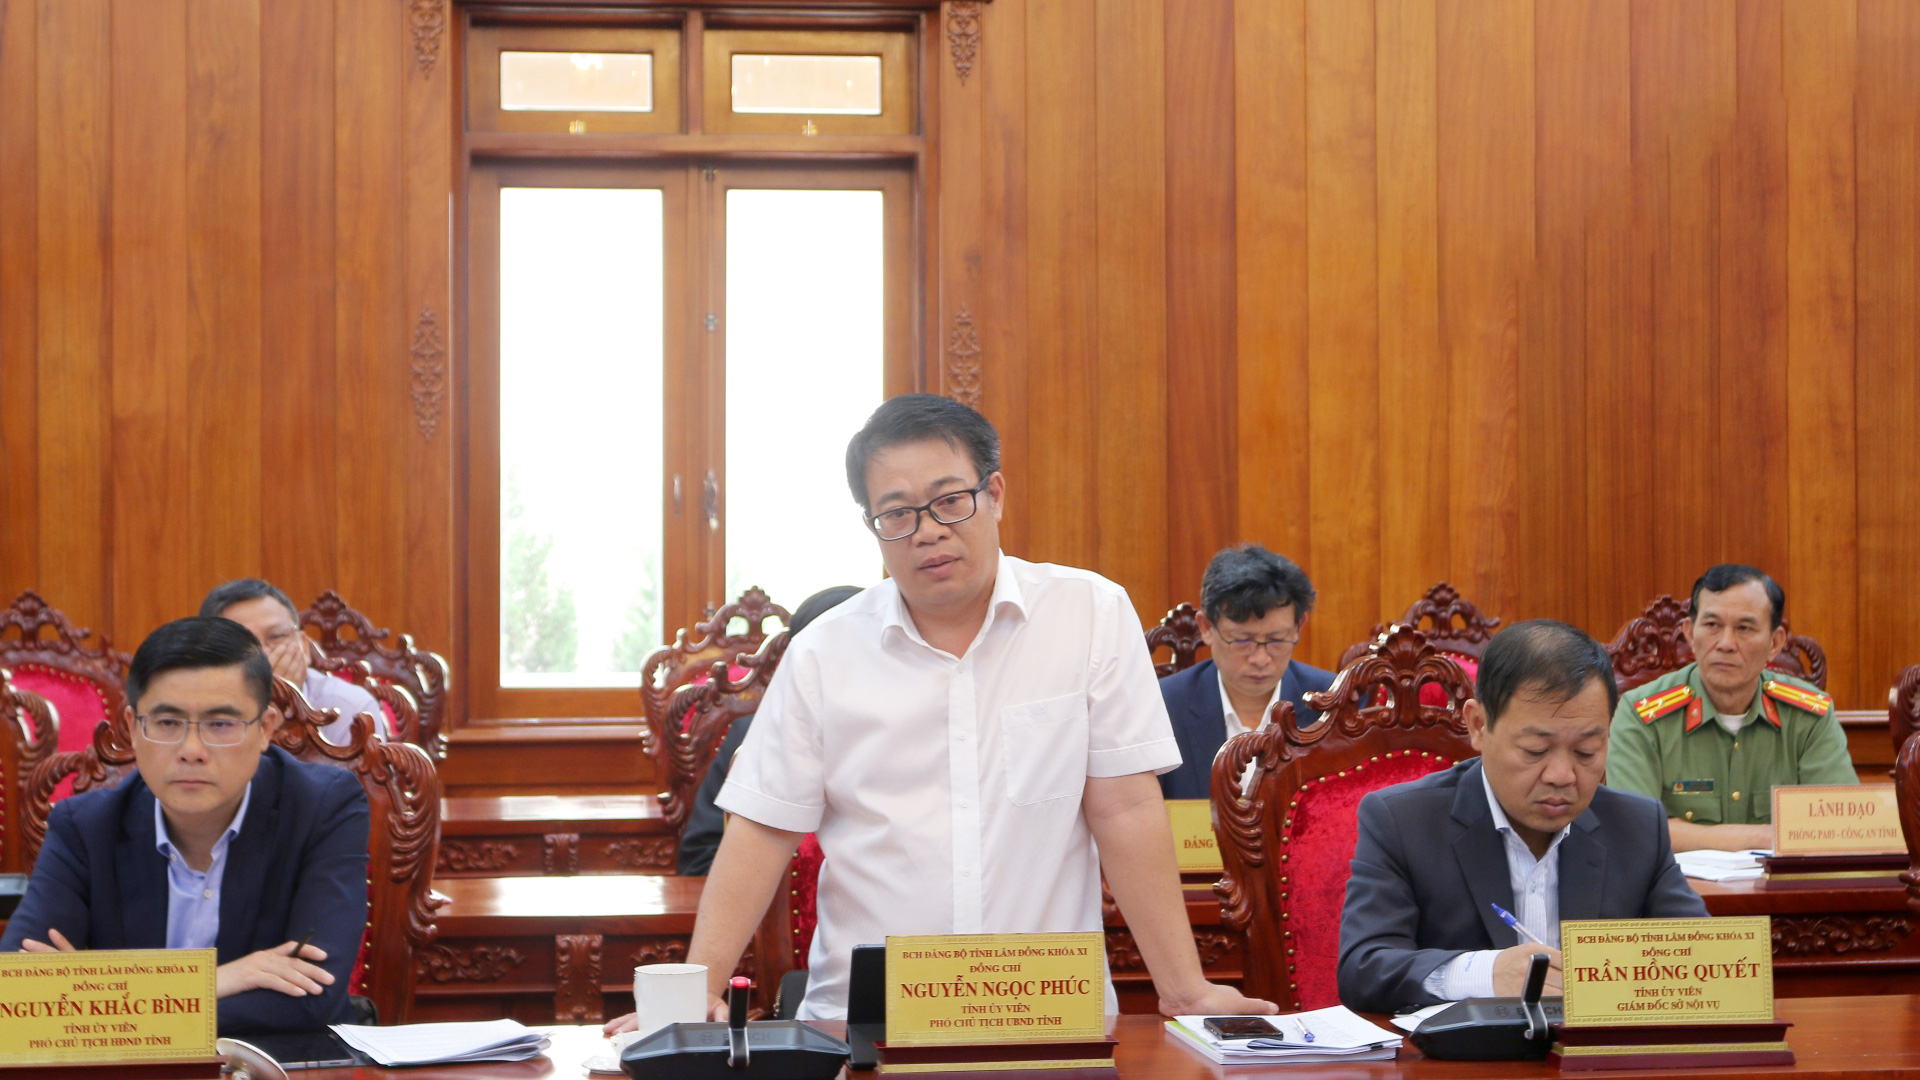 Phó Chủ tịch UBND tỉnh Nguyễn Ngọc Phúc trao đổi về công tác thẩm tra, xác minh nhân sự 